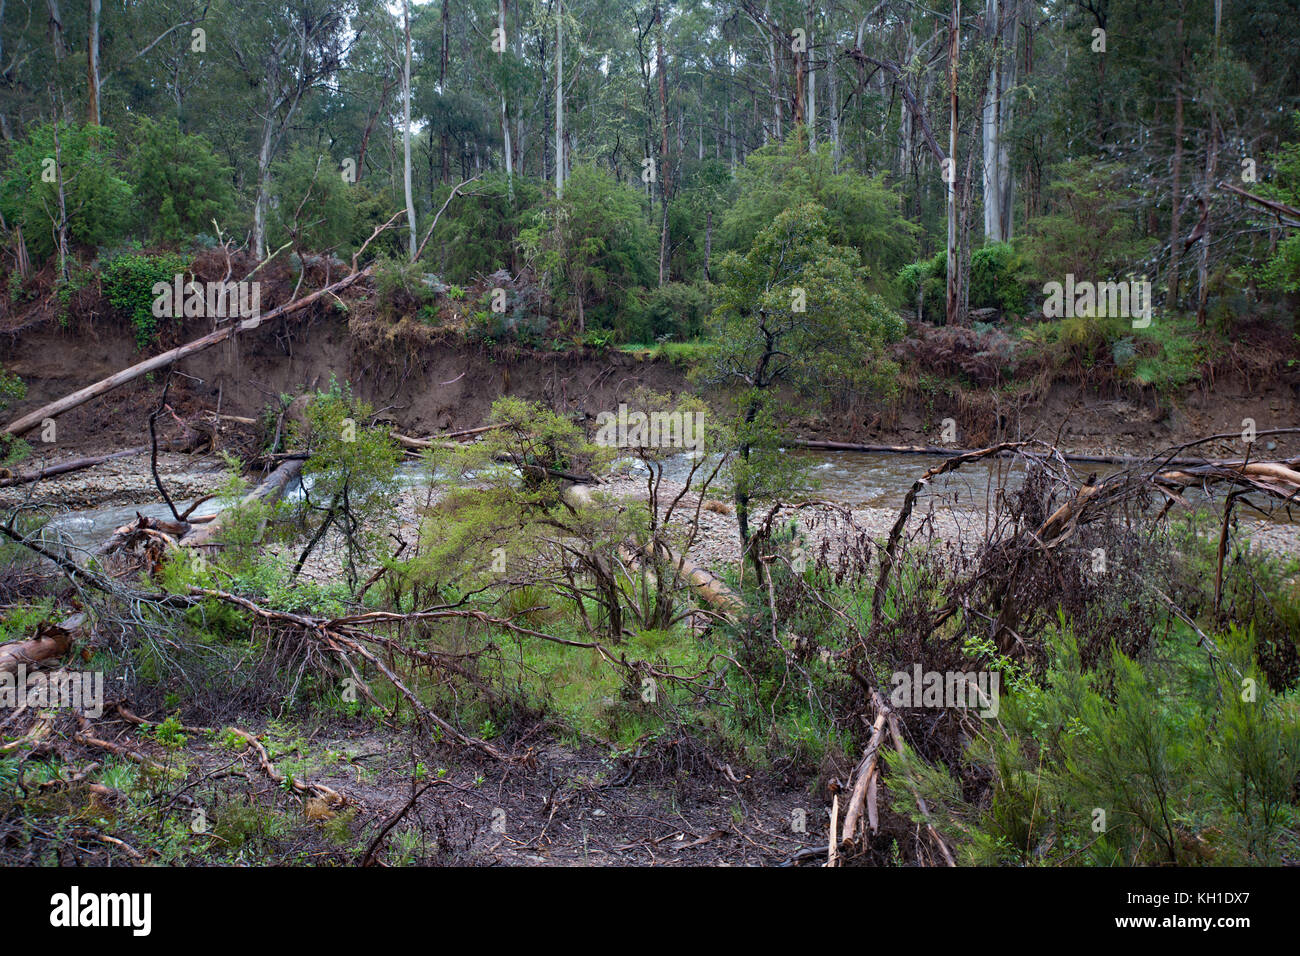 Mountain stream, Victoria Australia Stock Photo